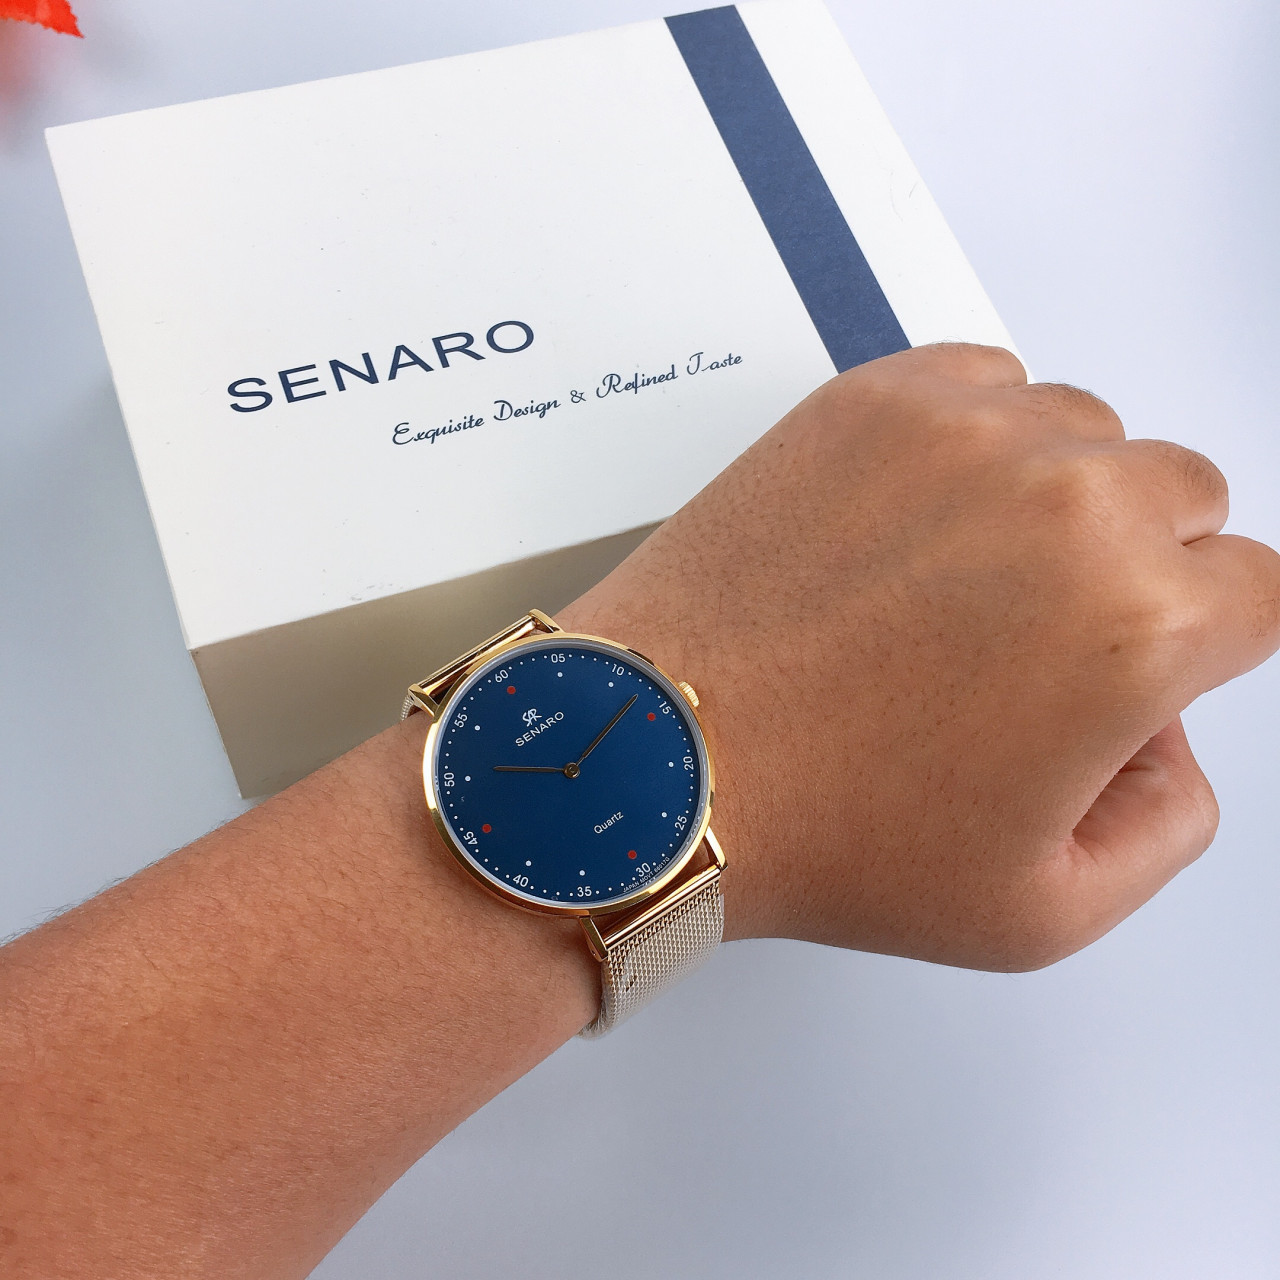 Đồng hồ nam SENARO Every Time Large 66016GSG - Đồng hồ Nhật Bản chính hãng